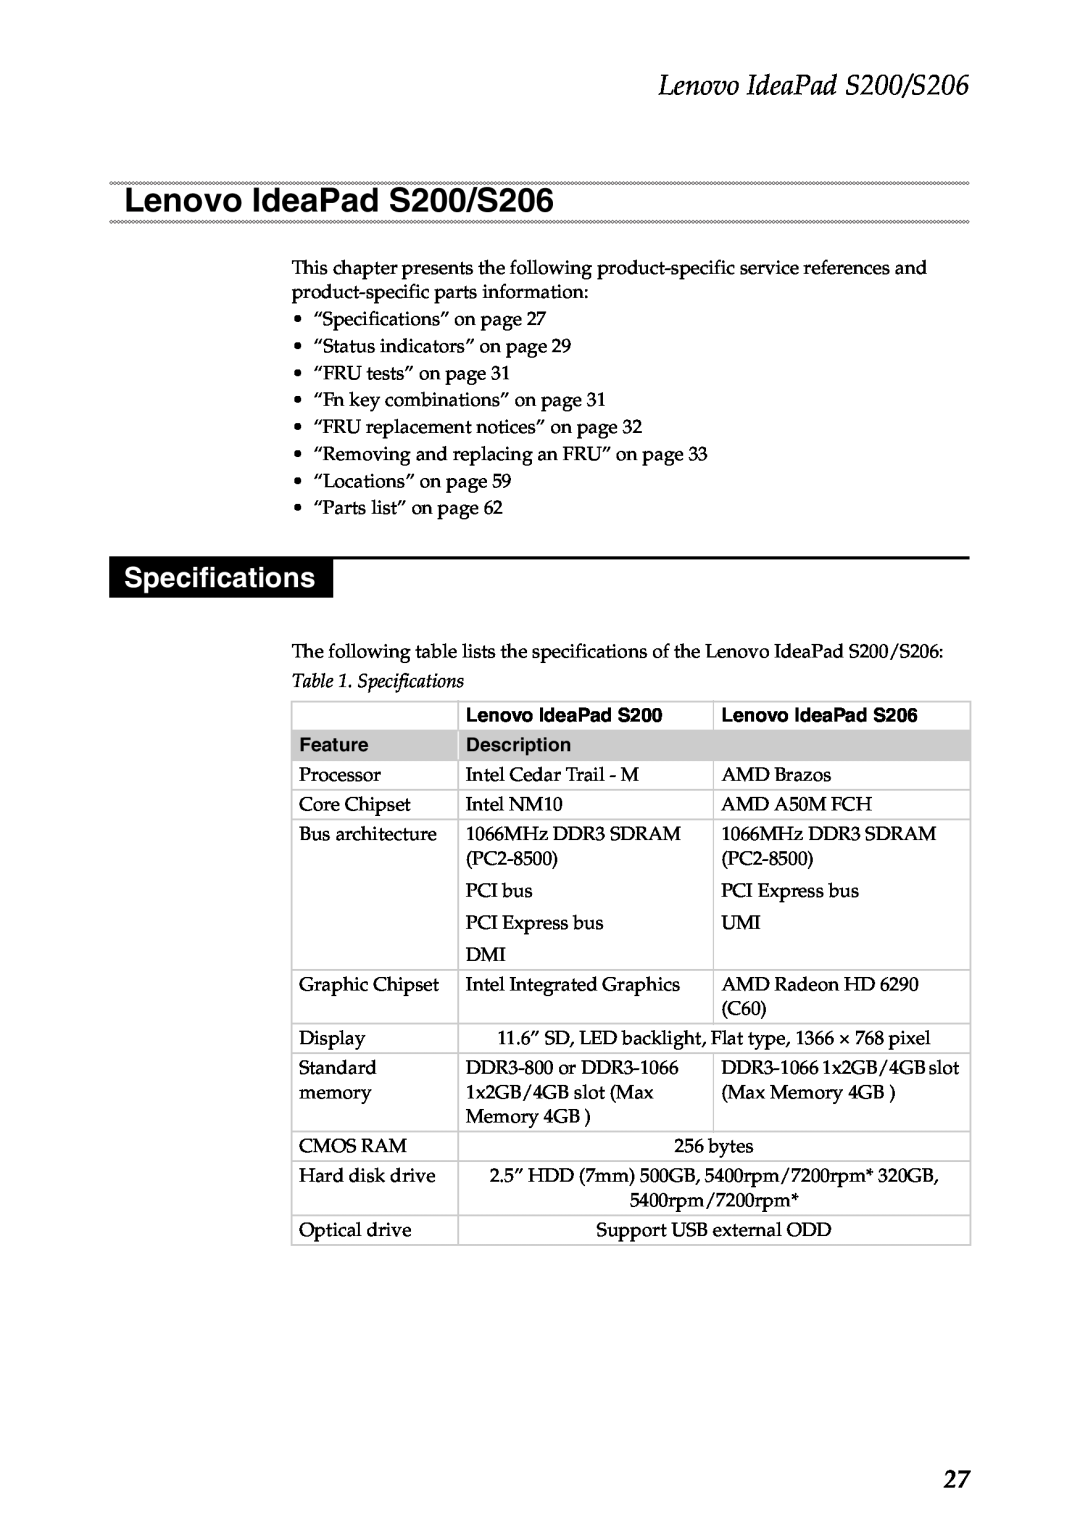 Lenovo manual Lenovo IdeaPad S200/S206, Specifications 